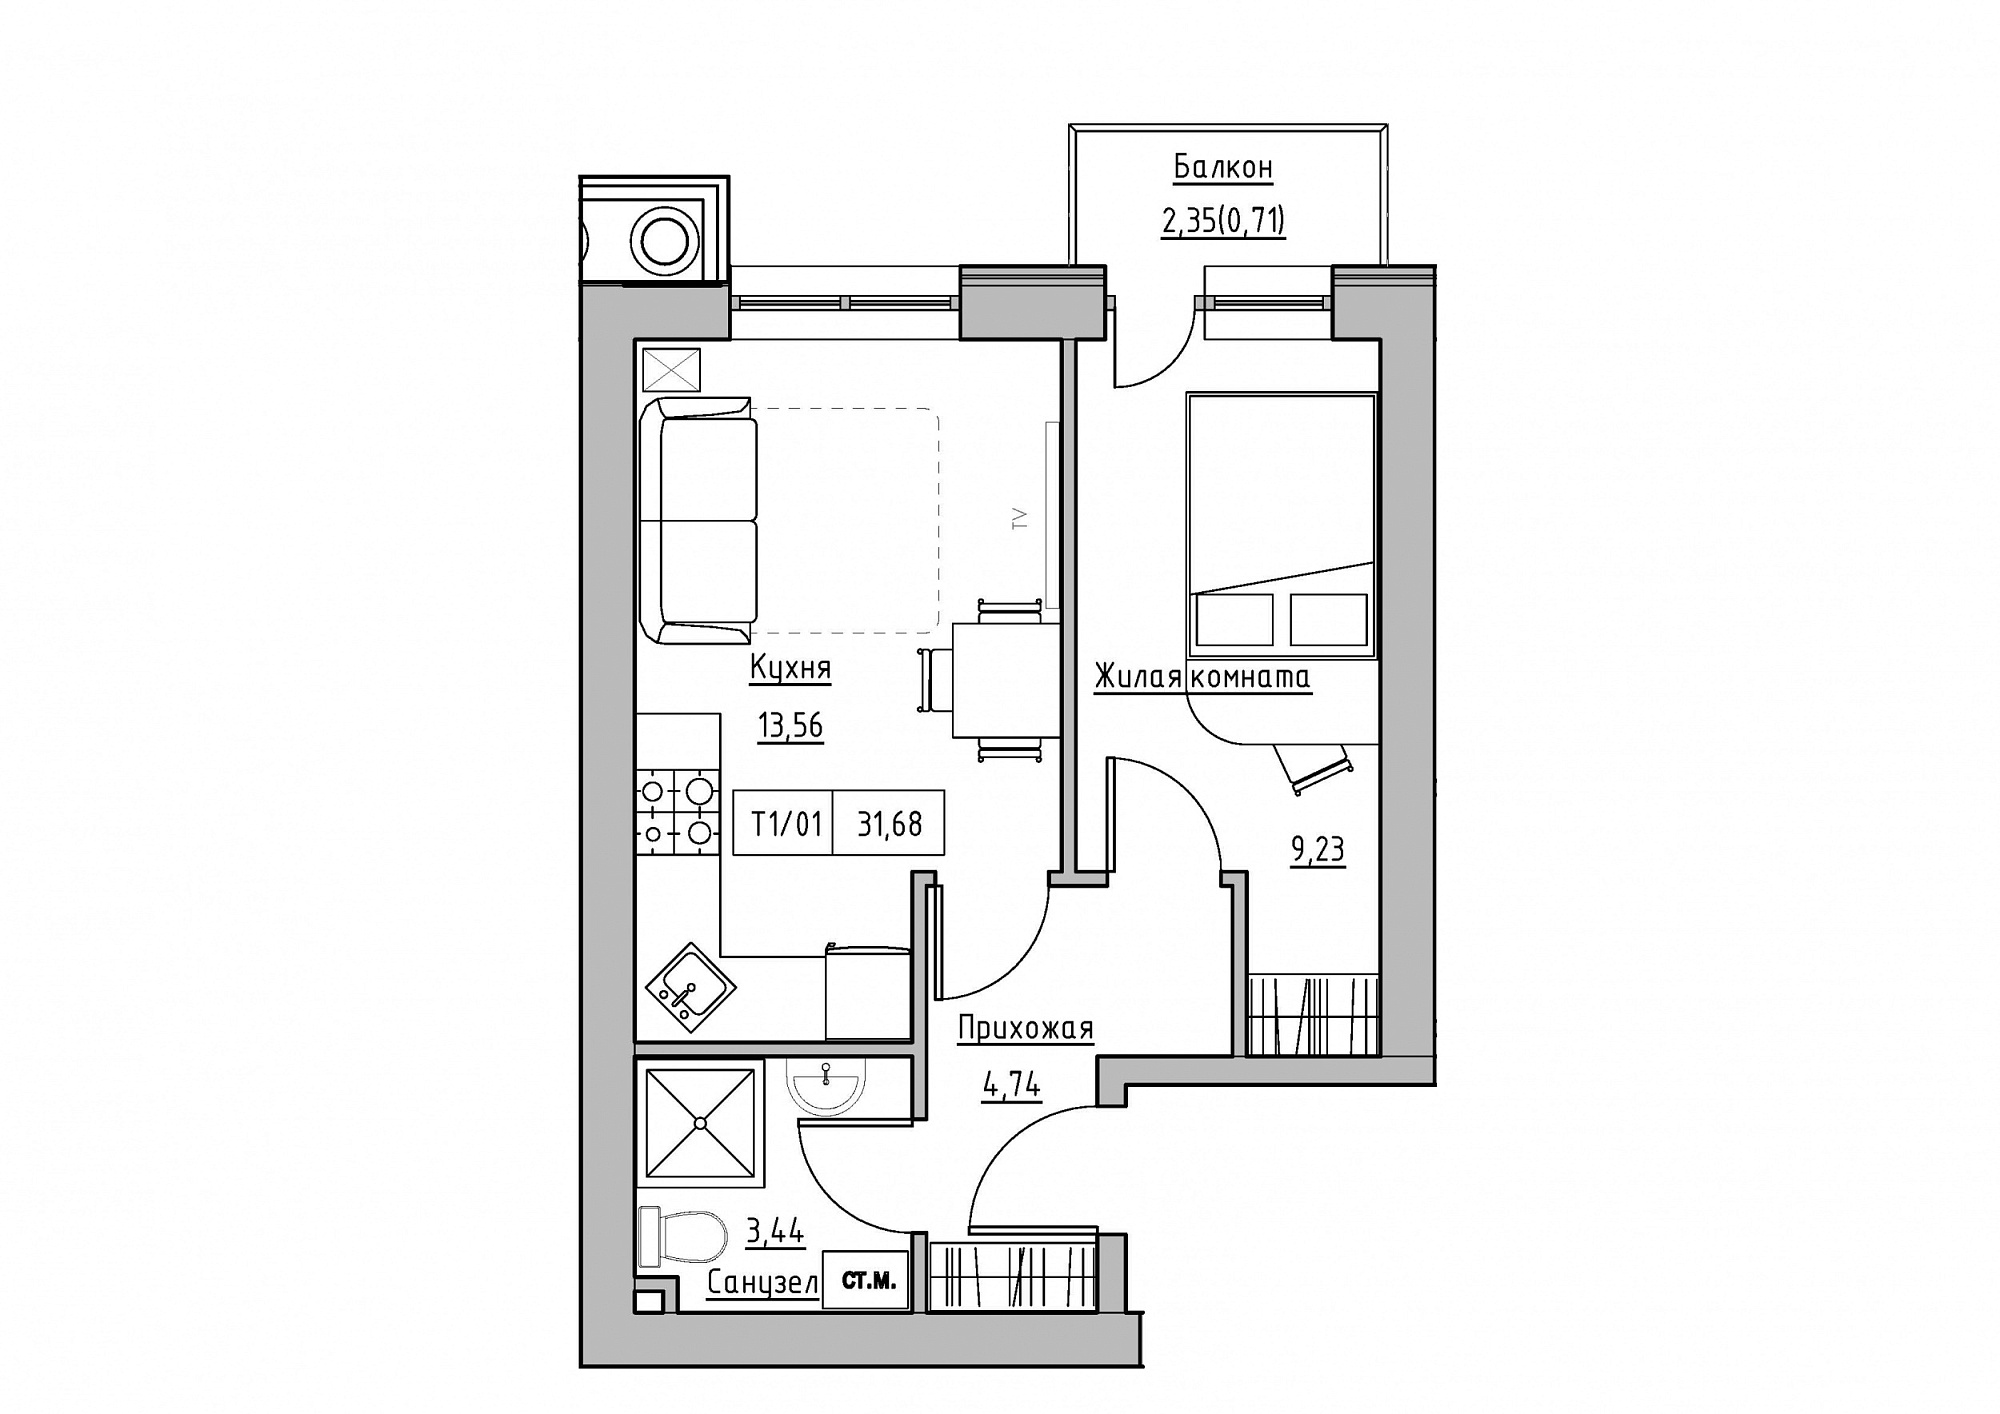 Планировка 1-к квартира площей 31.68м2, KS-011-04/0013.